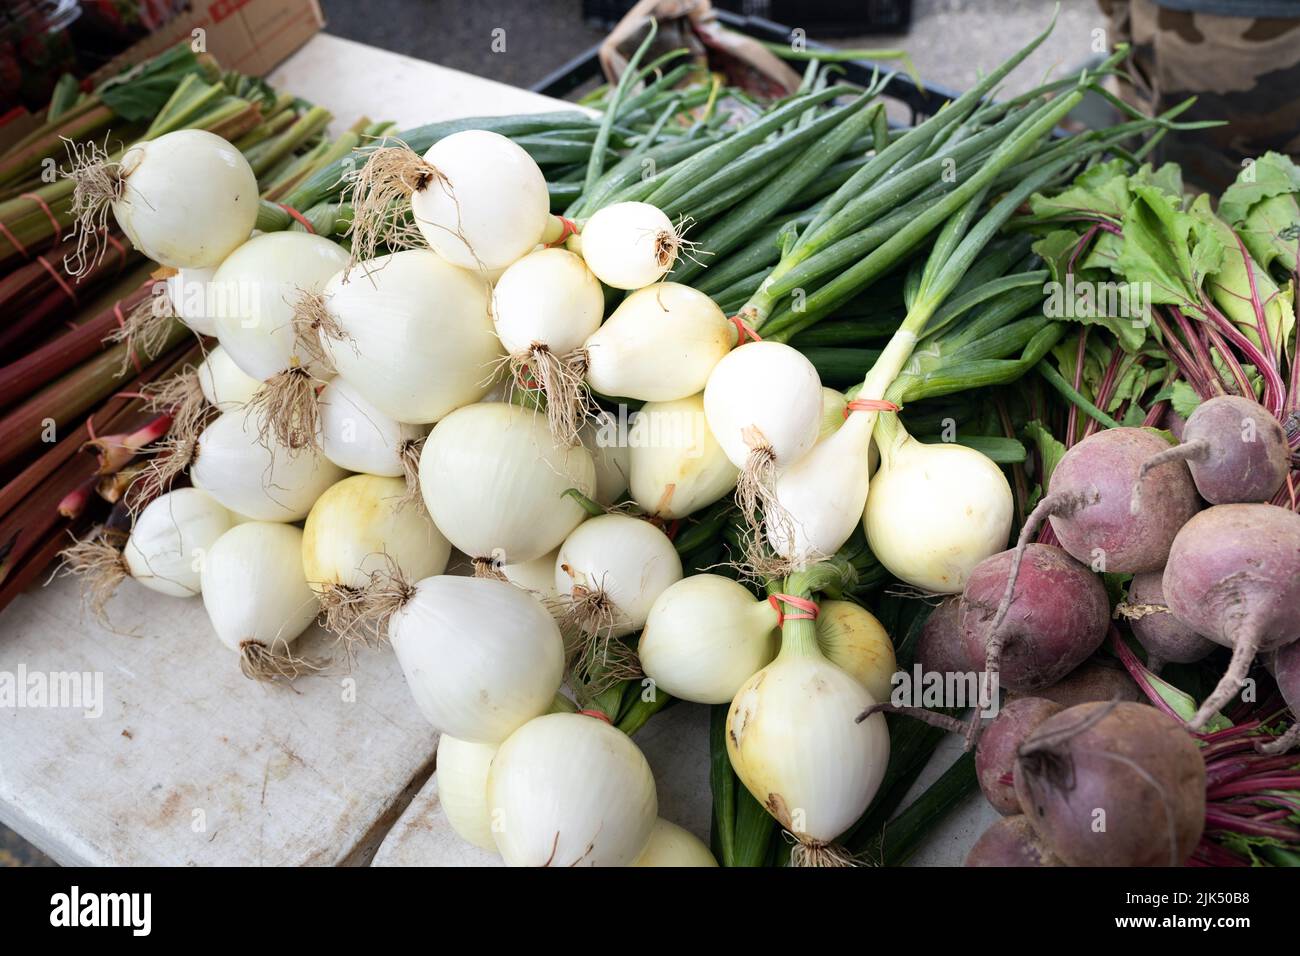 Cebollas orgánicas verdes frescas con bulbos blancos para la venta en el mercado de agricultores Foto de stock